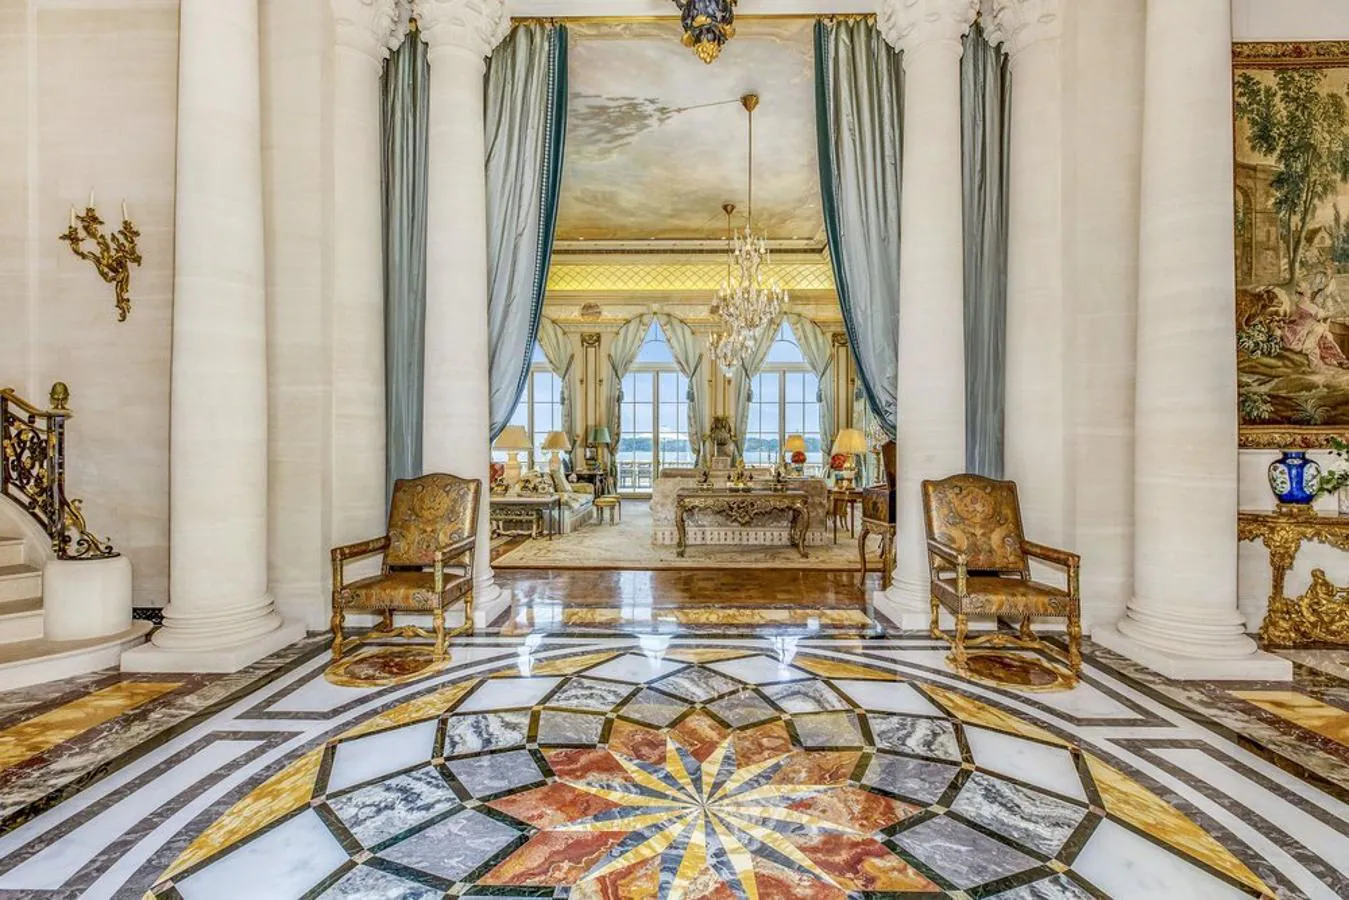 Podrás vivir en el Palacio de Versalles por 35 millones de euros